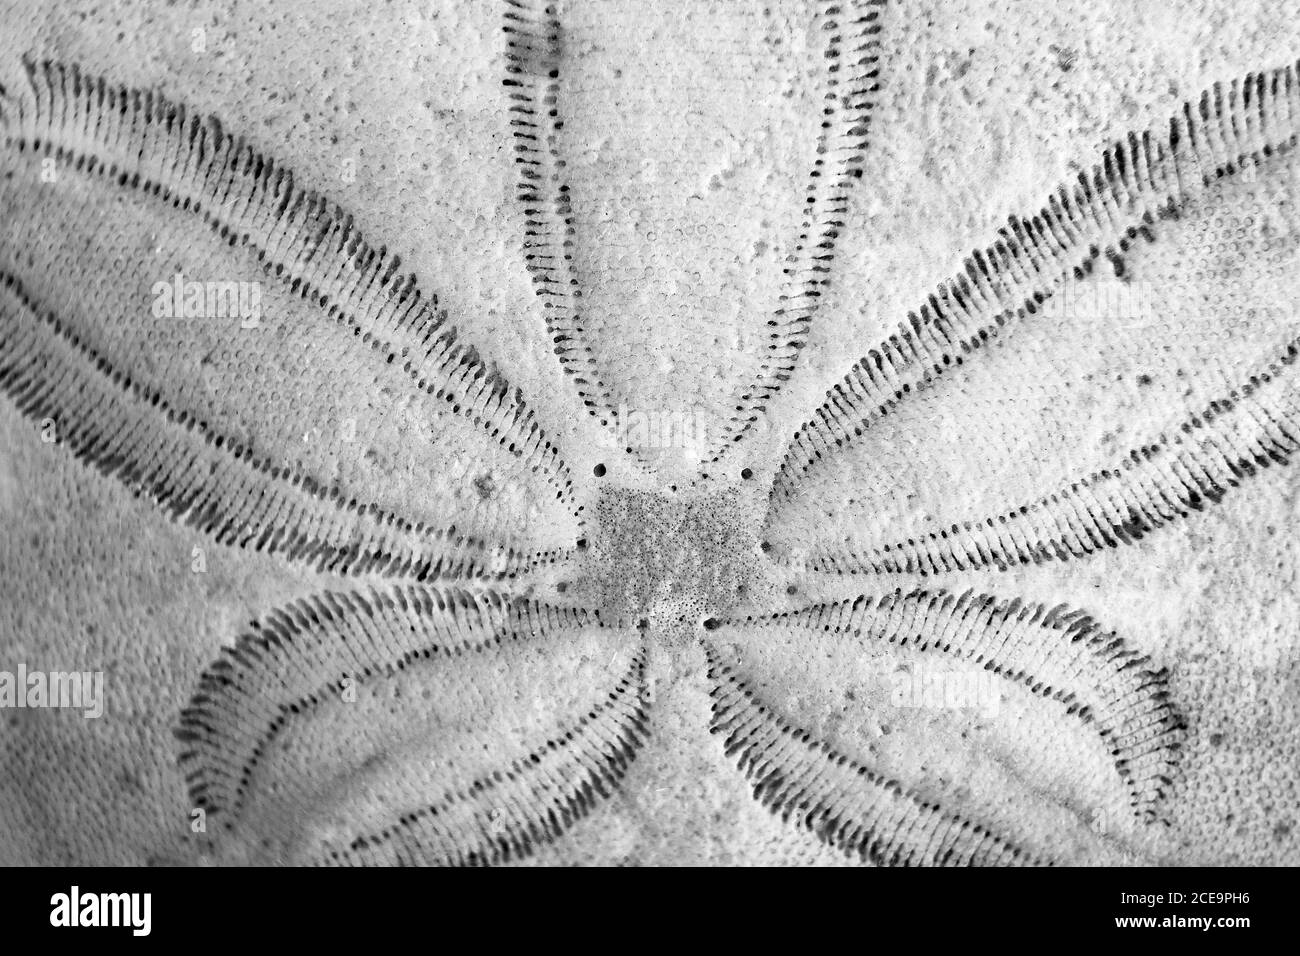 Macro de gros plan du motif radial à cinq plis sur un sable dollar en noir et blanc Banque D'Images